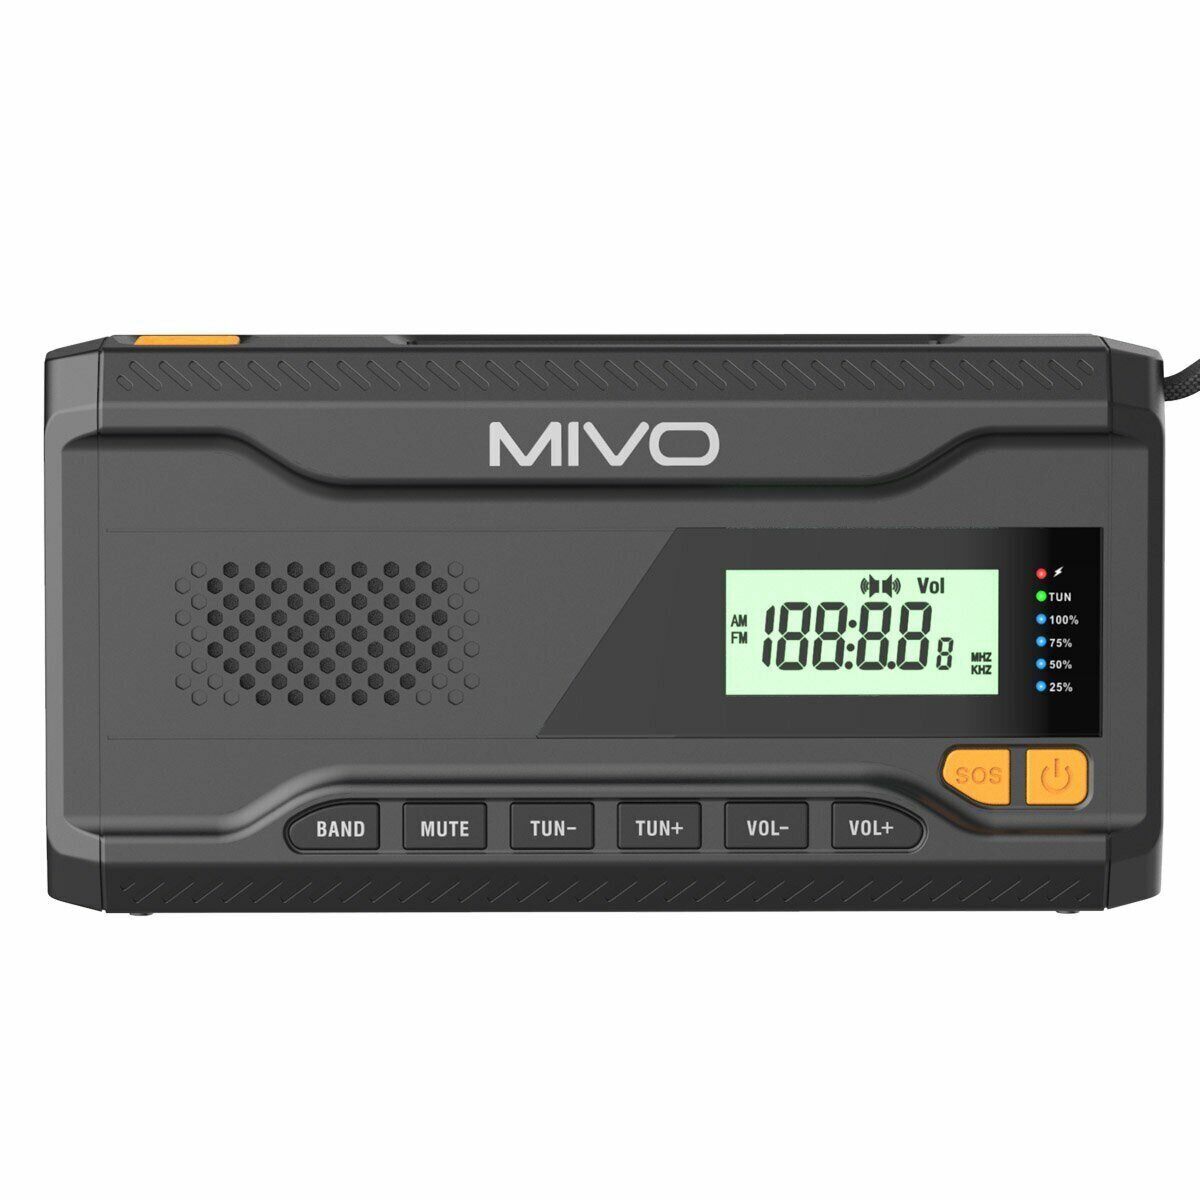 Многофункциональный походный FM радио приемник Mivo MR-001/Черный